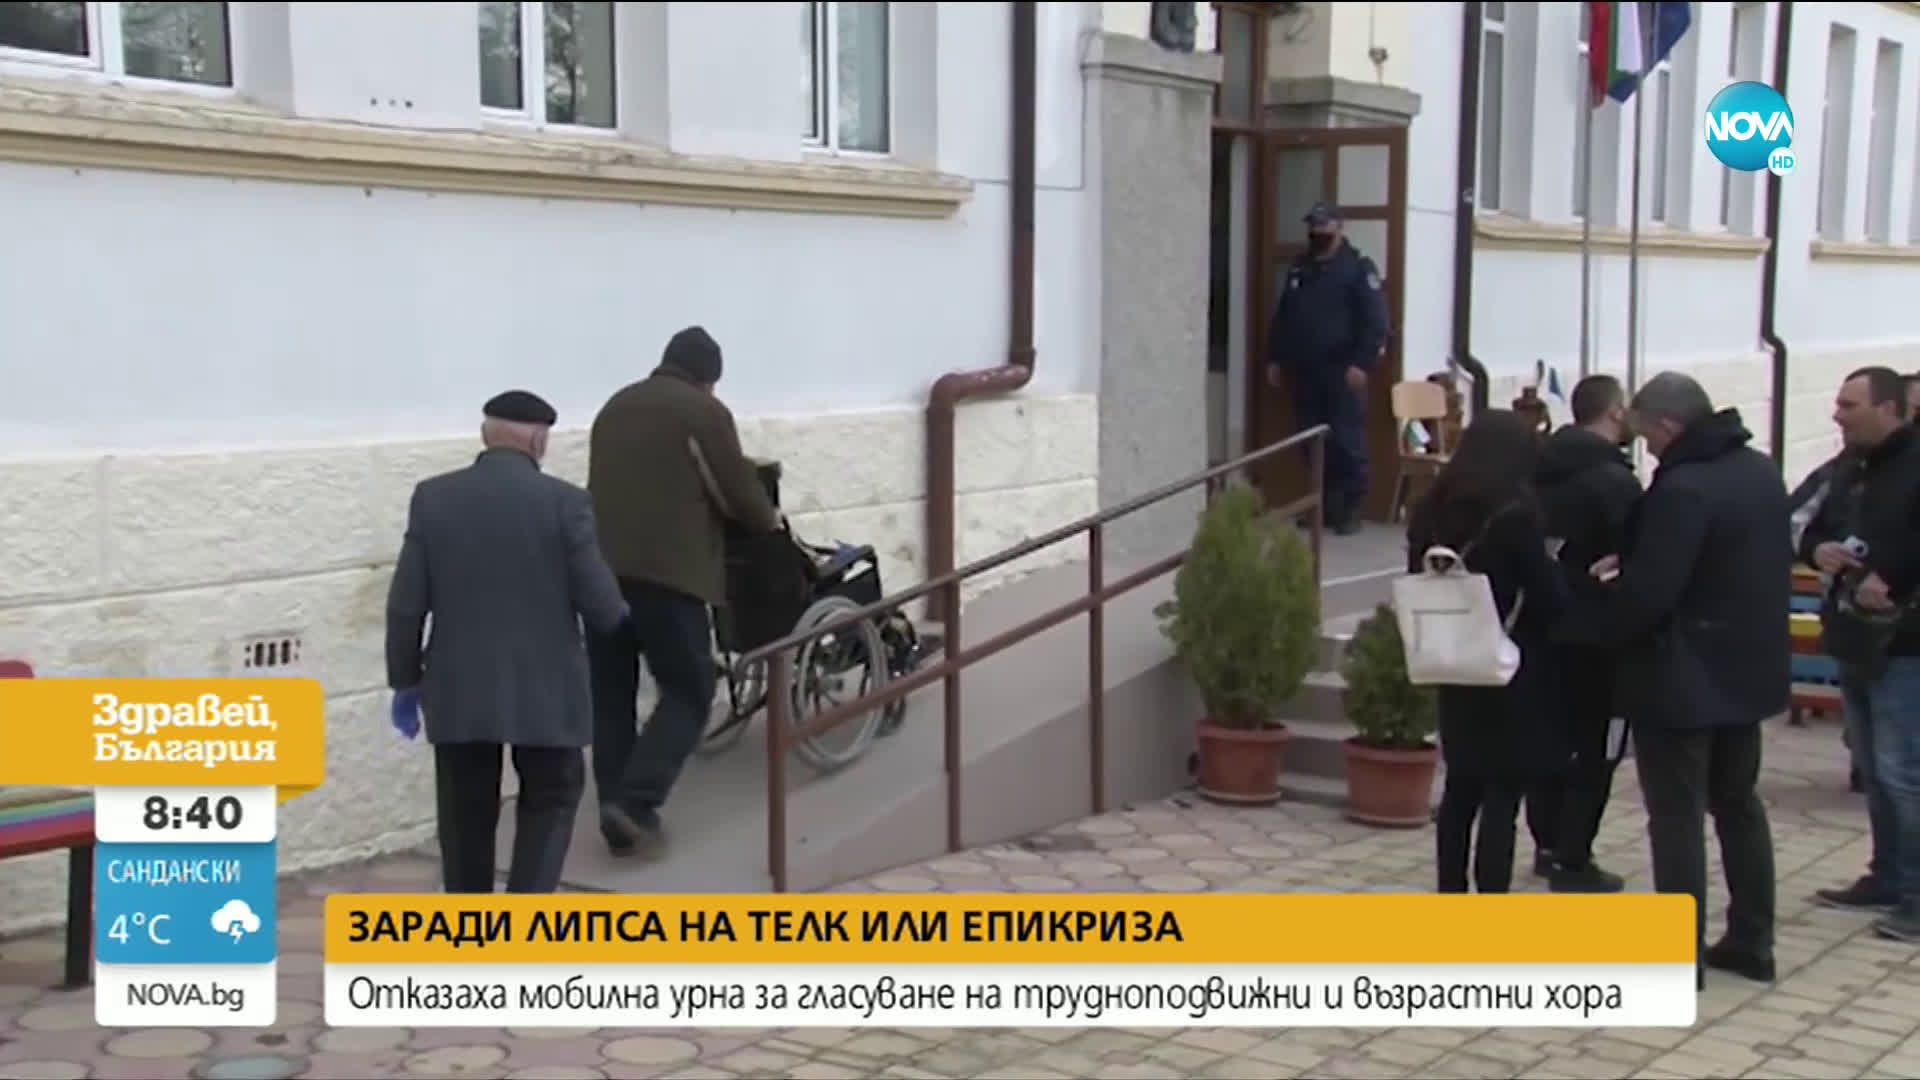 Отказаха мобилна избирателна урна на трудноподвижни възрастни хора в Бургас